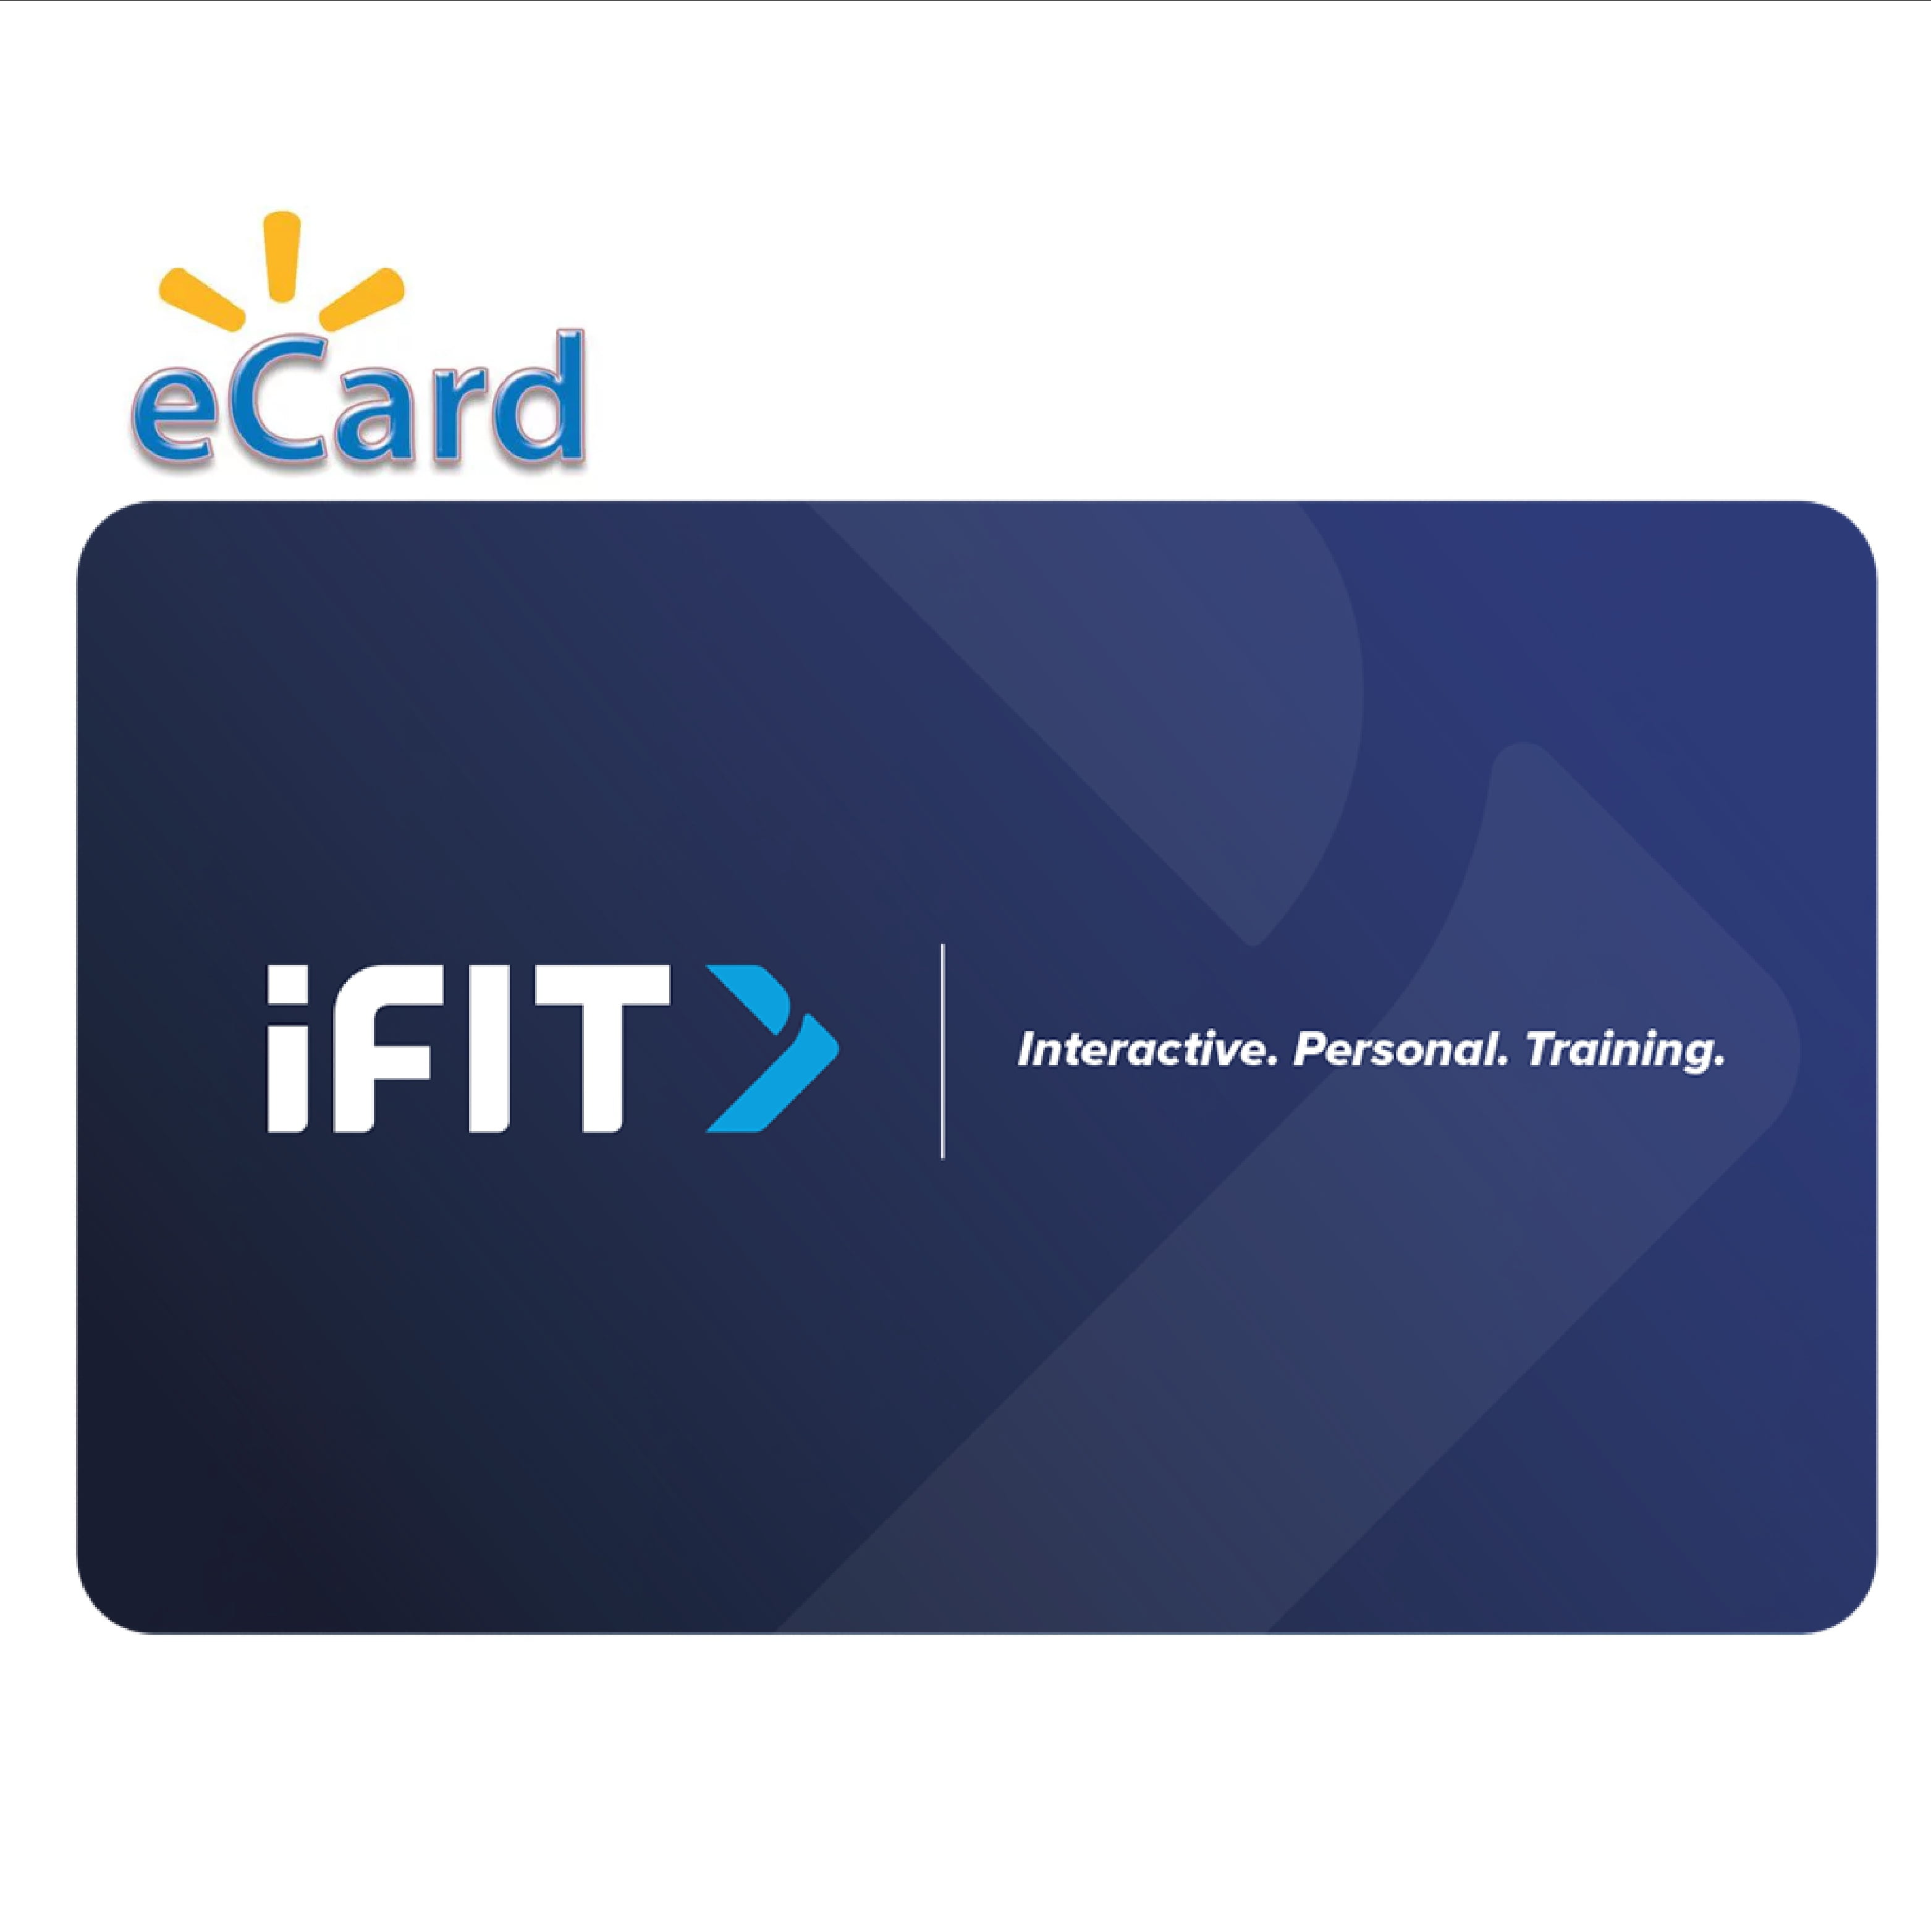 iFIT Membership Cards - 1-Year iFIT Family Membership Card